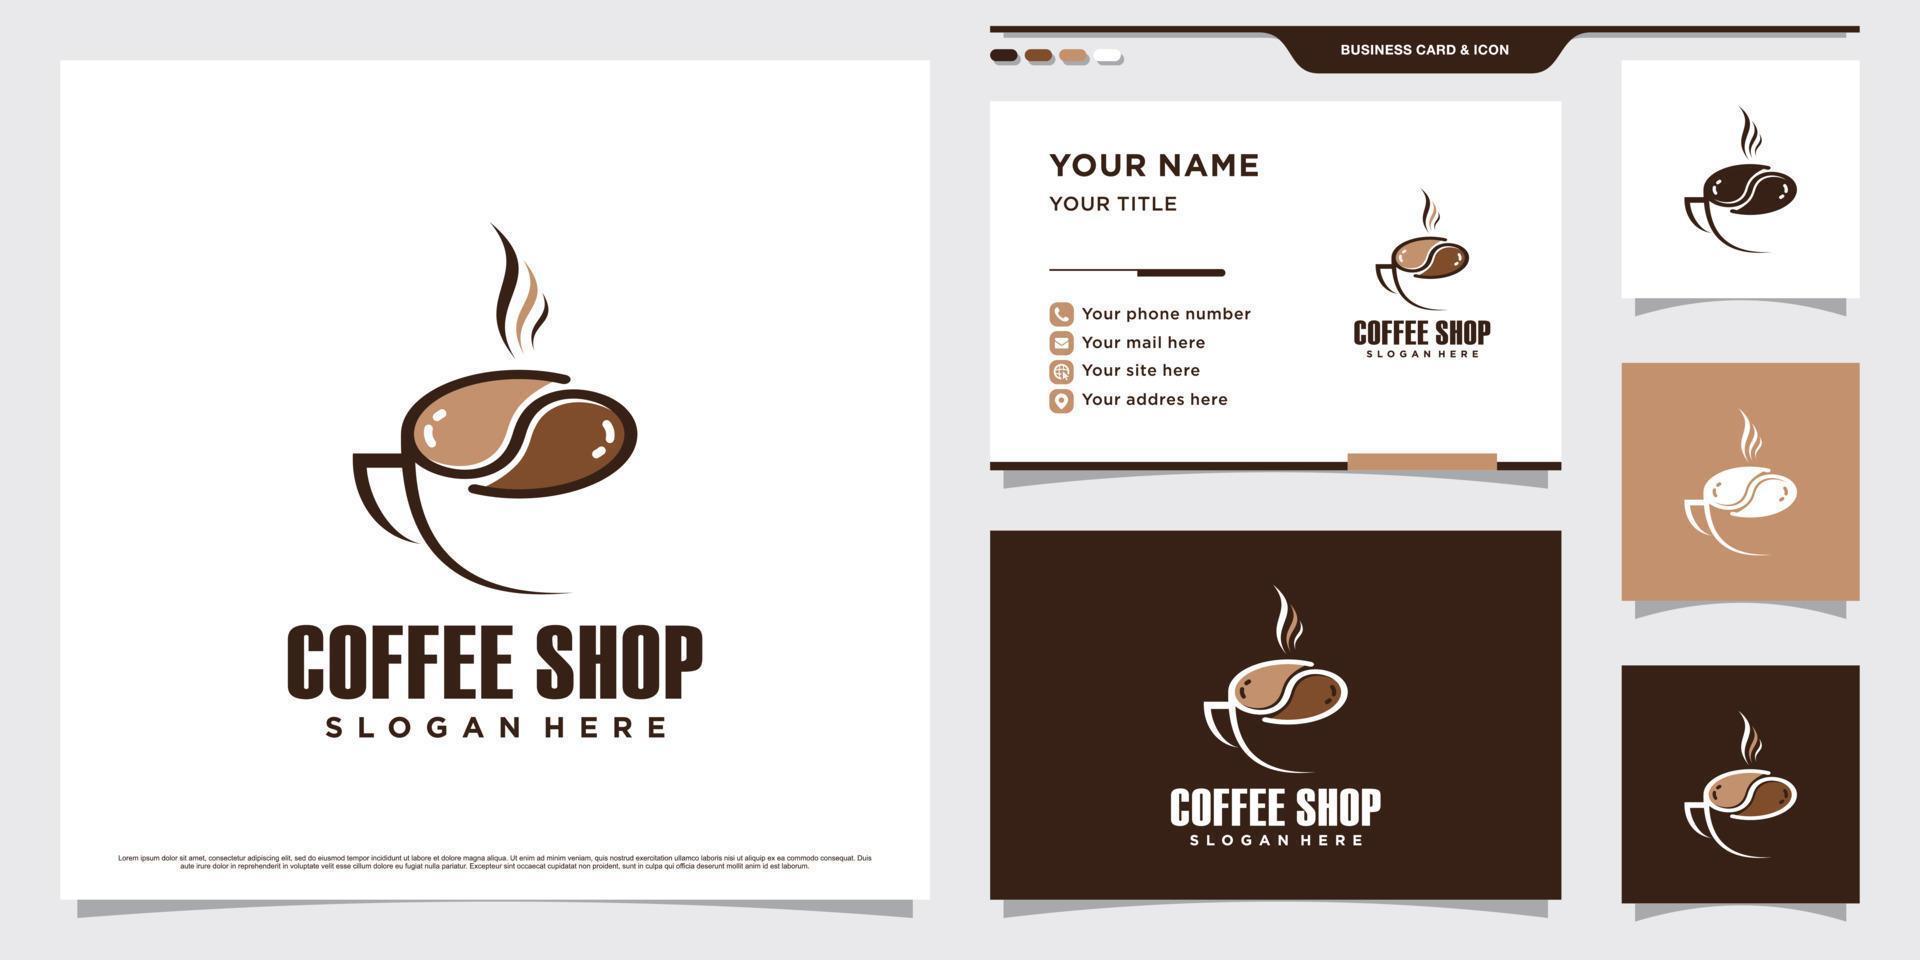 illustration de conception de logo de café avec icône de tasse de café et modèle de carte de visite vecteur